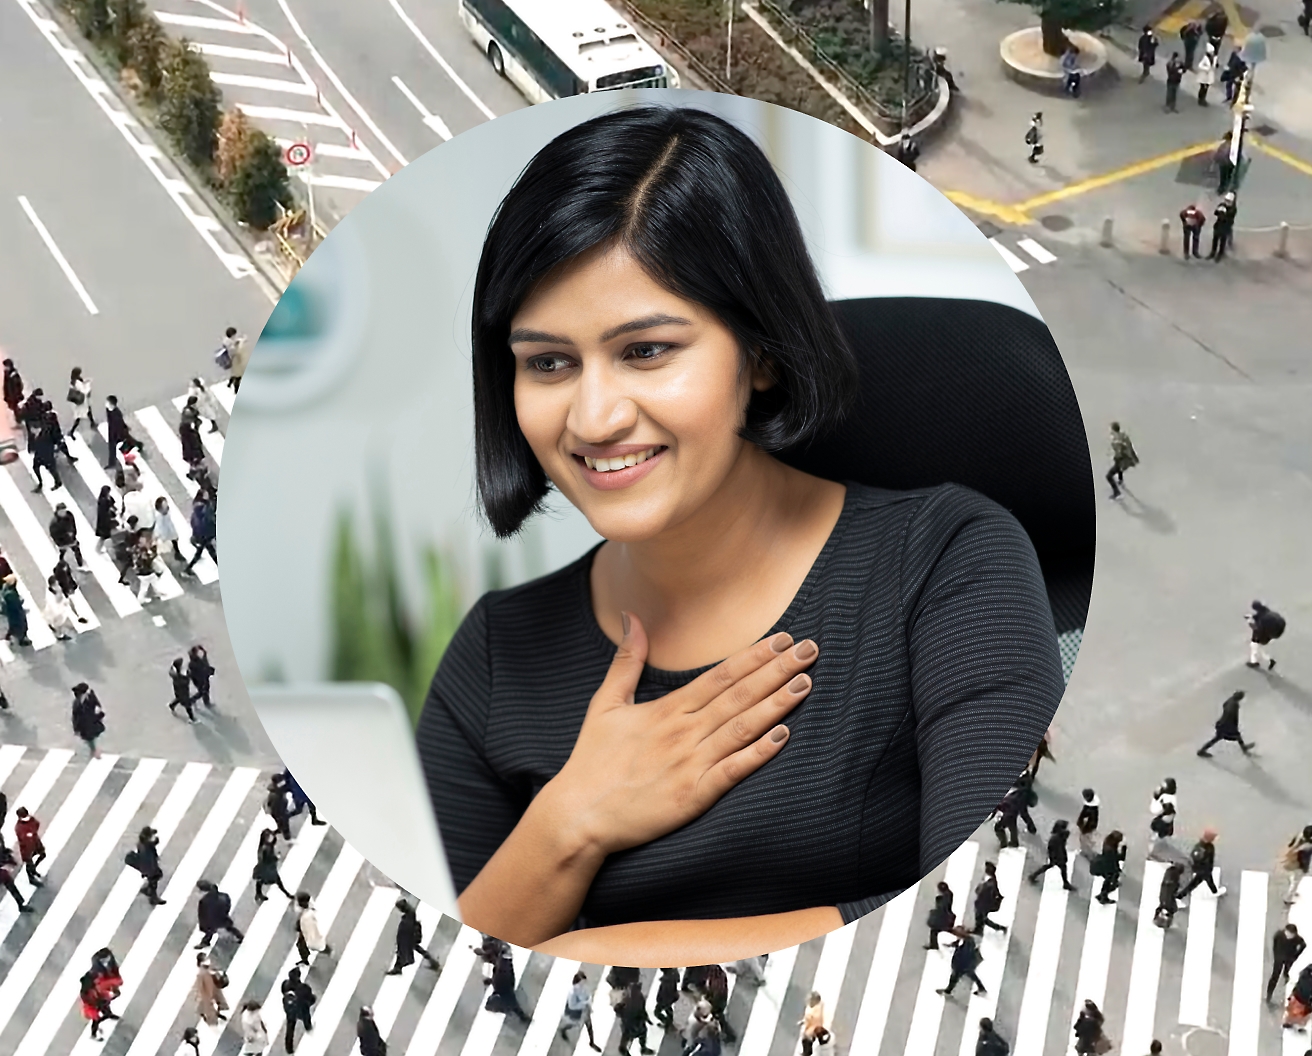 Una donna con tiene una mano contro il petto mentre lavora al suo computer portatile, con sullo sfondo l’immagine di un incrocio stradale con persone che passano